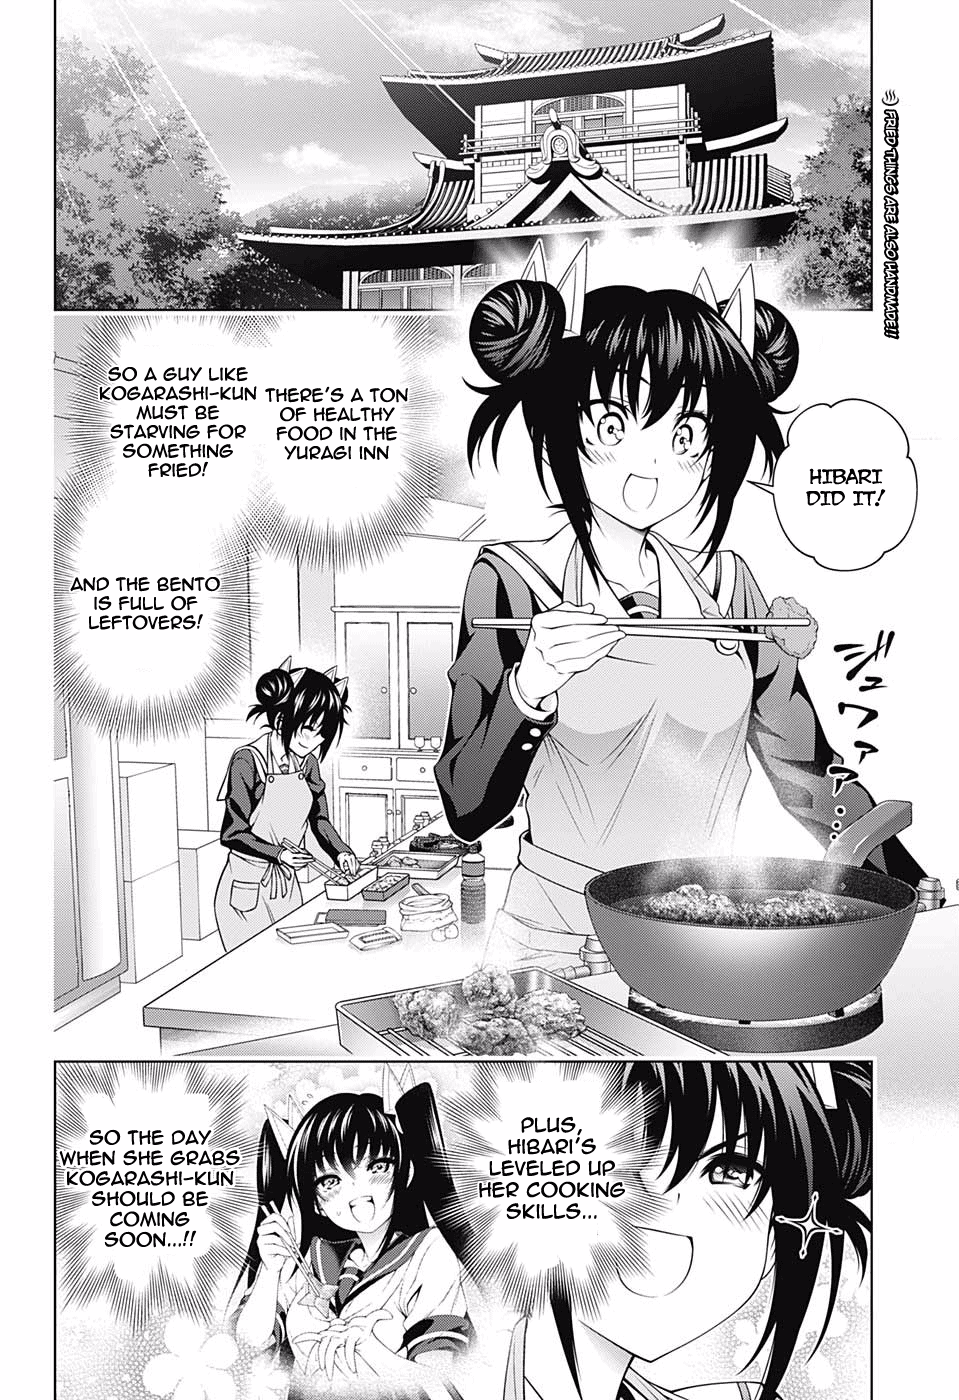 Yuragi-Sou No Yuuna-San - Page 2